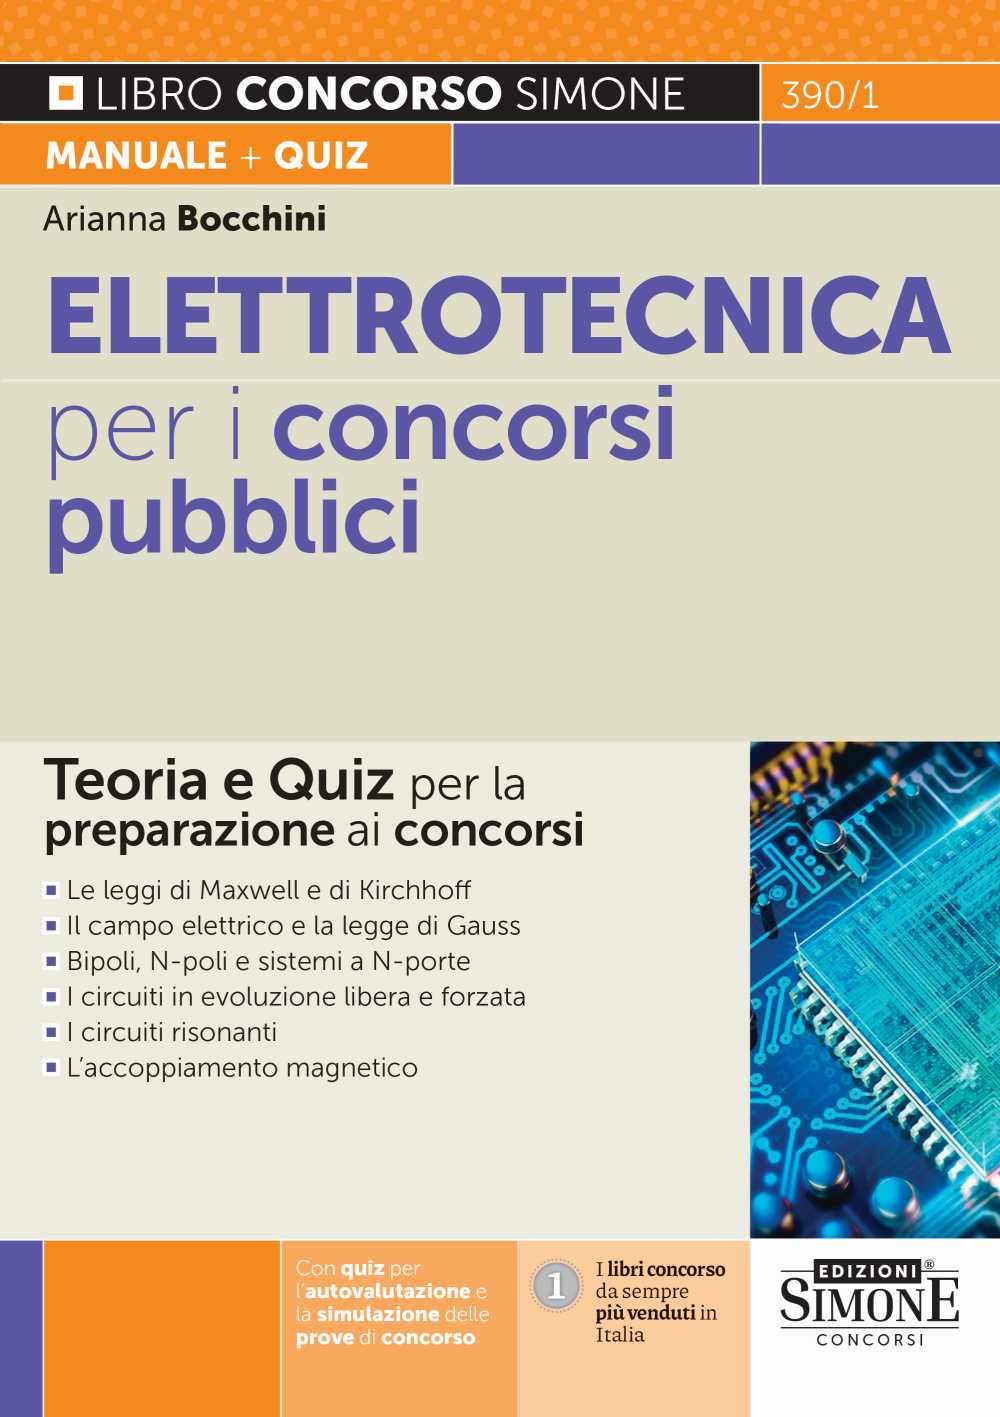 Elettrotecnica per i concorsi pubblici - Teoria e Quiz per la preparazione  ai concorsi - 390/1